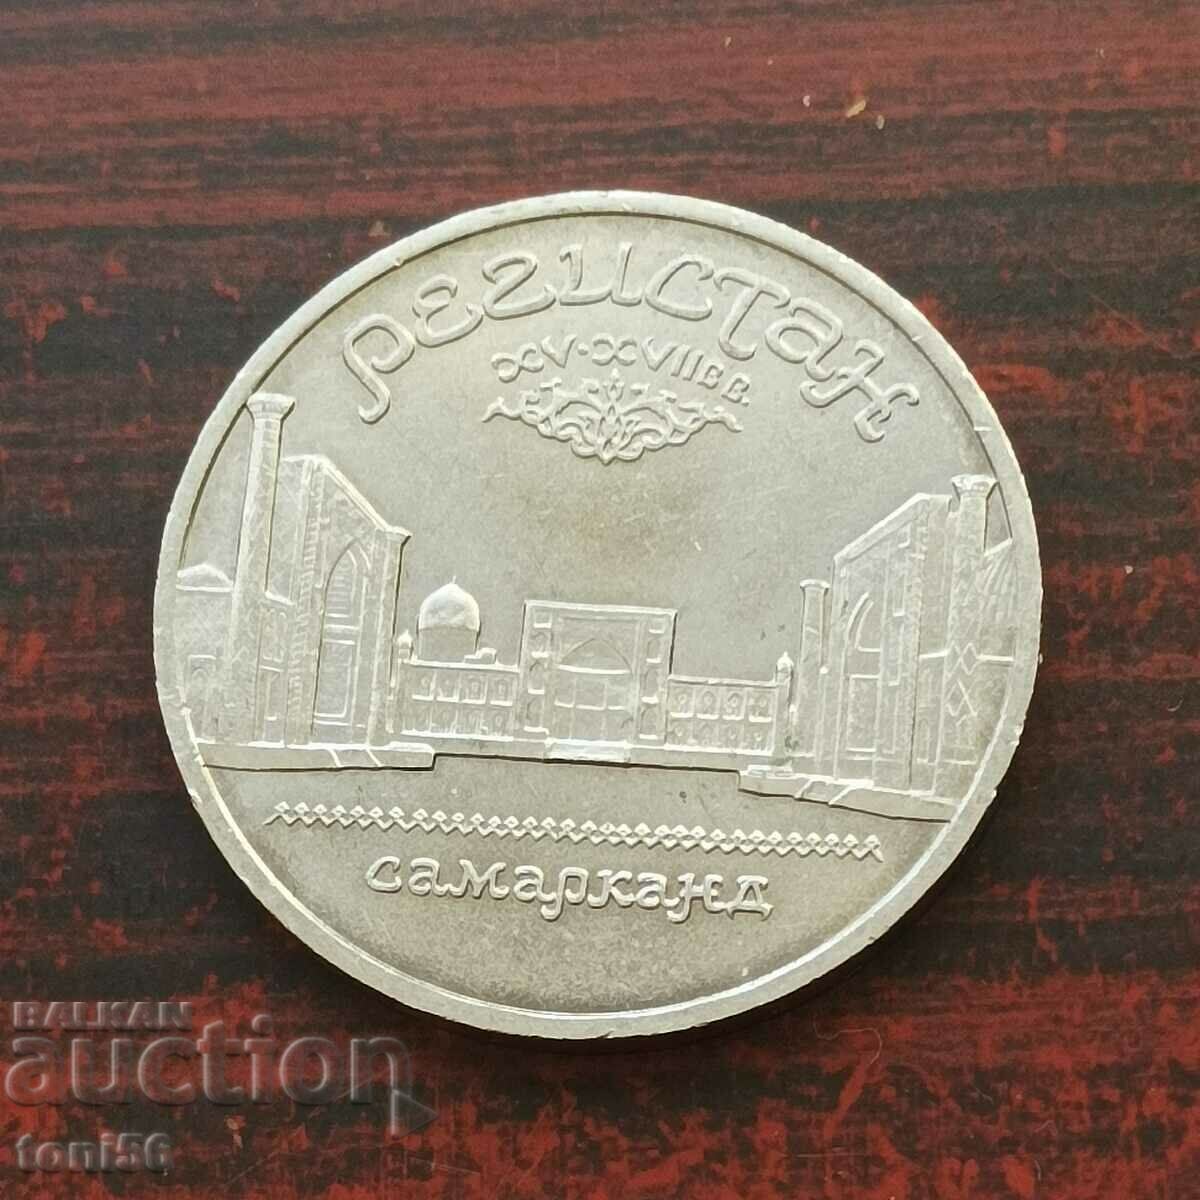 Ρωσία 5 ρούβλια 1989 aUNC - Ιωβηλαίο Σαμαρκάνδη